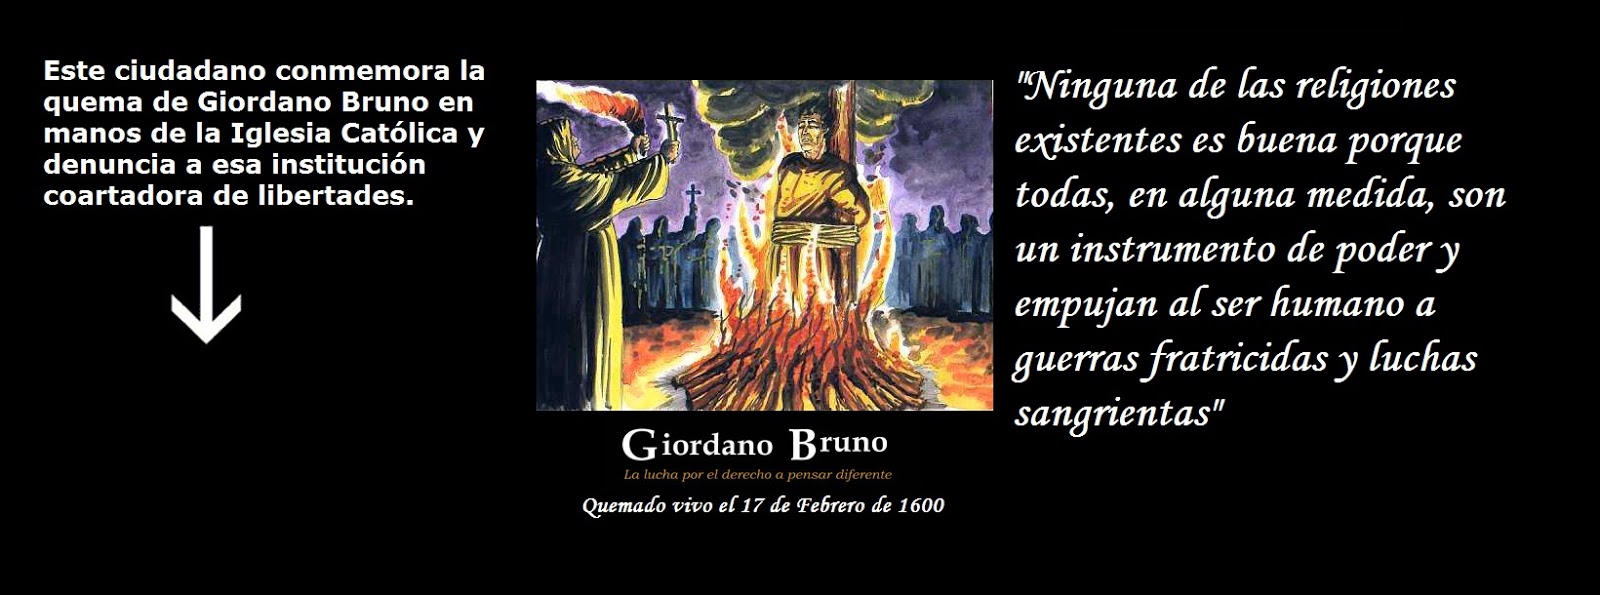 Blog Sin Dioses: Portada de Facebook en honor a Giordano Bruno